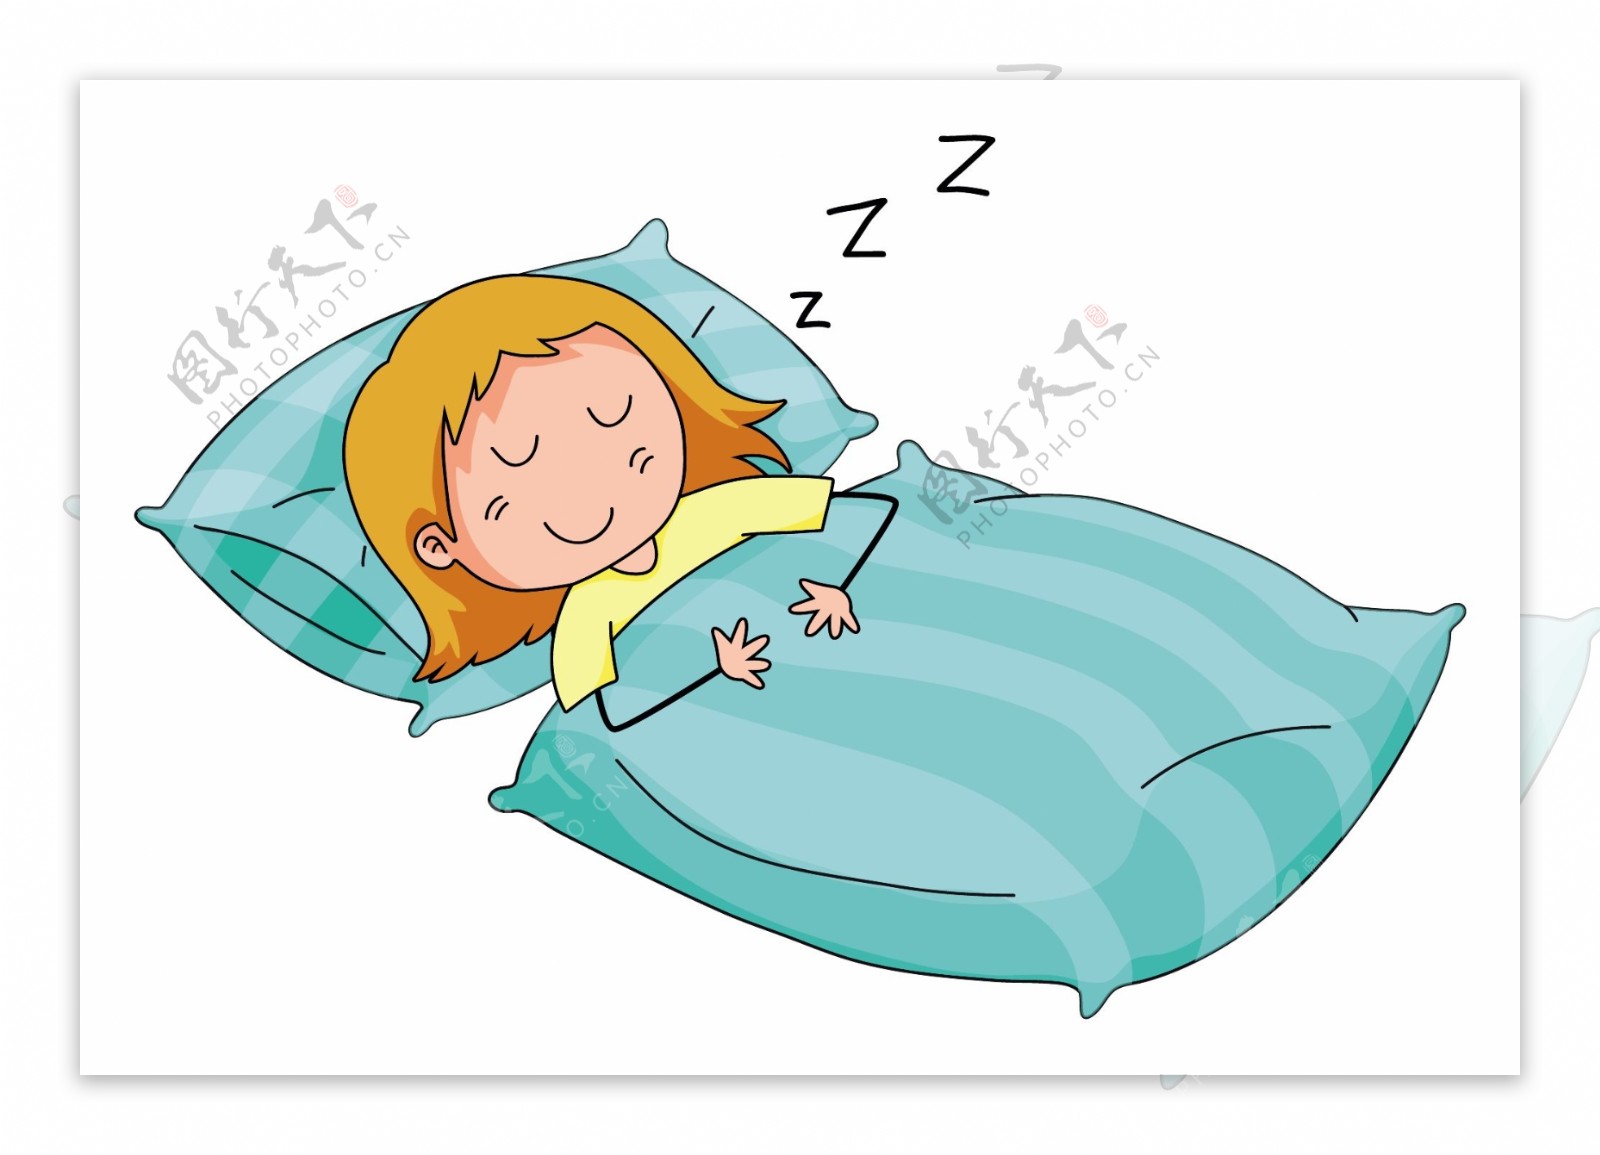 睡觉照片卡通图片_睡觉的卡通图片可爱_微信公众号文章